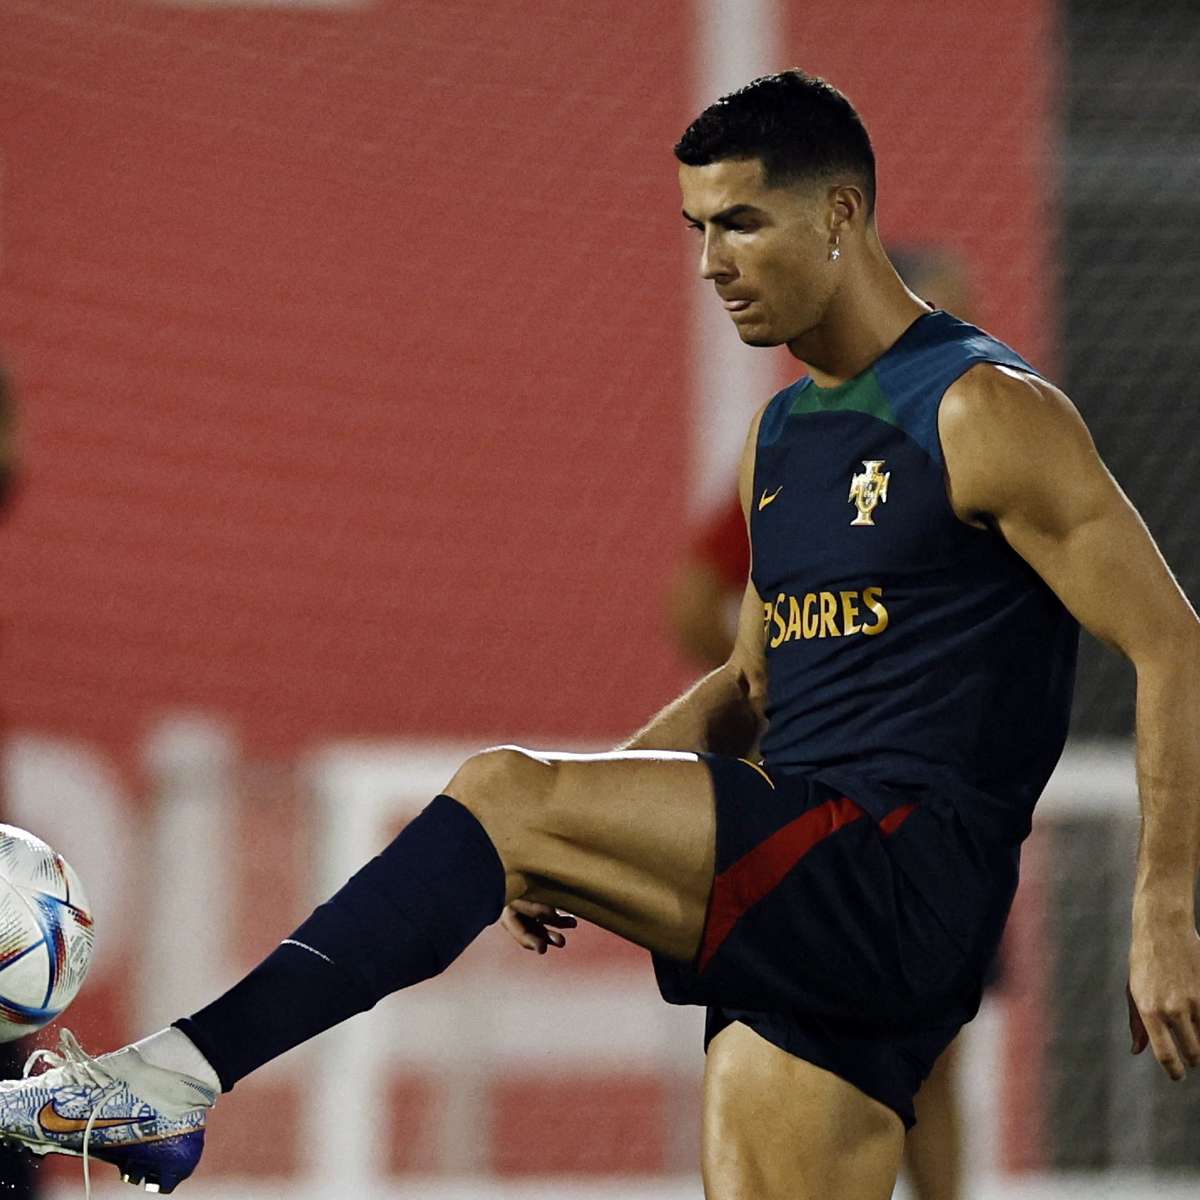 Cristiano Ronaldo nega obsessão por nova Bola de Ouro: 'Já ganhei o que  devia' - ESPN